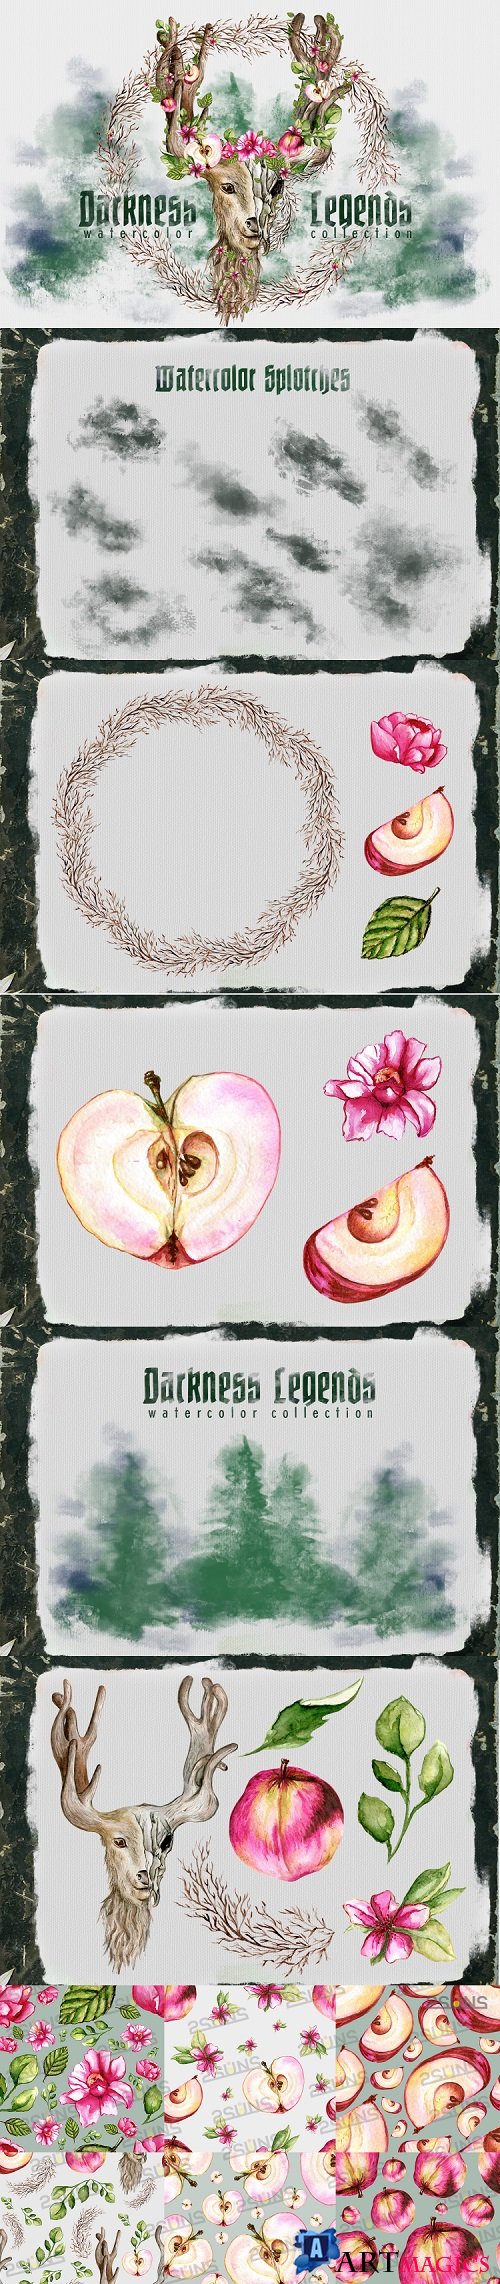 Darkness Legends Watercolor illustration png apple floral  - 486883